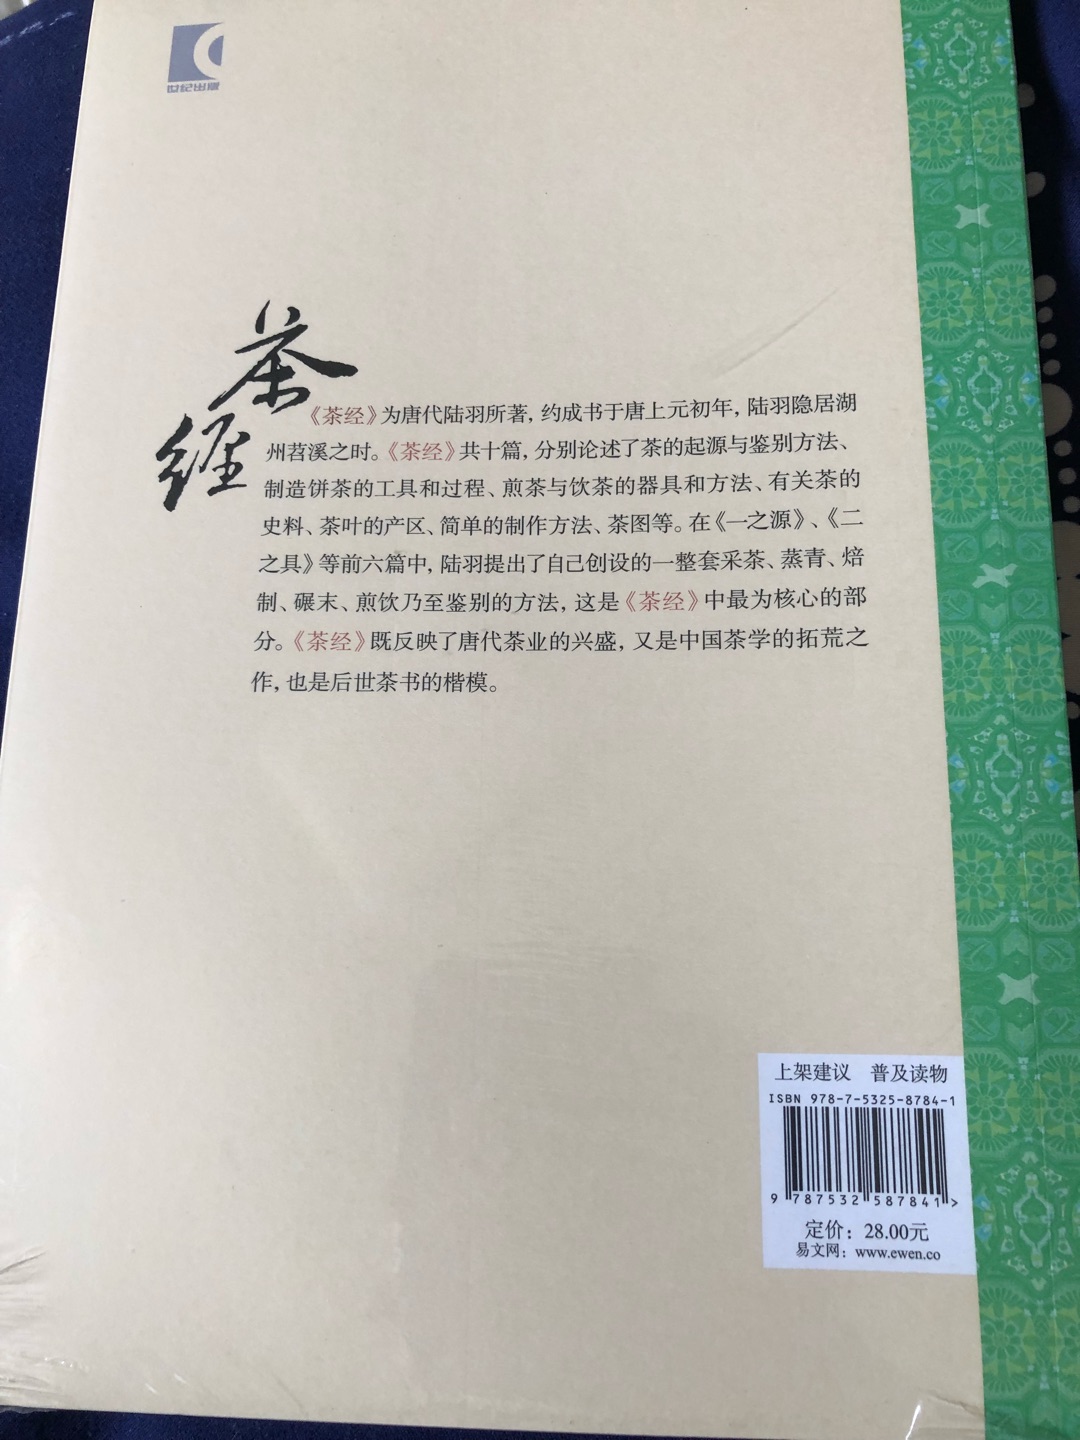 好書，值得擁有。謝謝“上海古籍出版社”，也感謝“京東”。你們辛苦了。